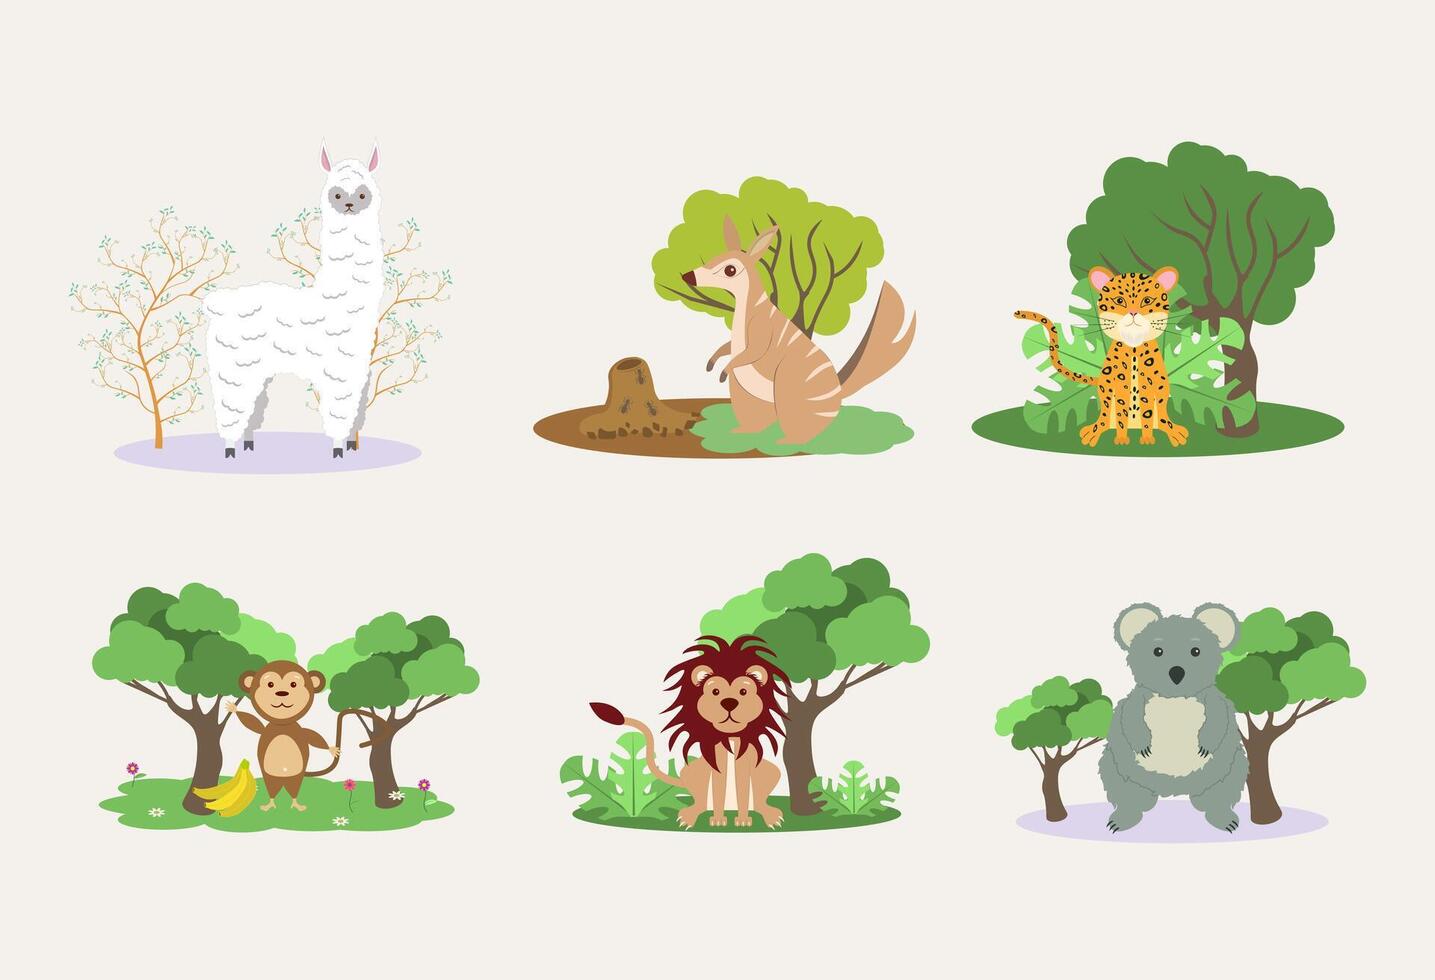 animais alpaca, jaguar, leão, macaco, coala e numbat. colorida ilustração vetor